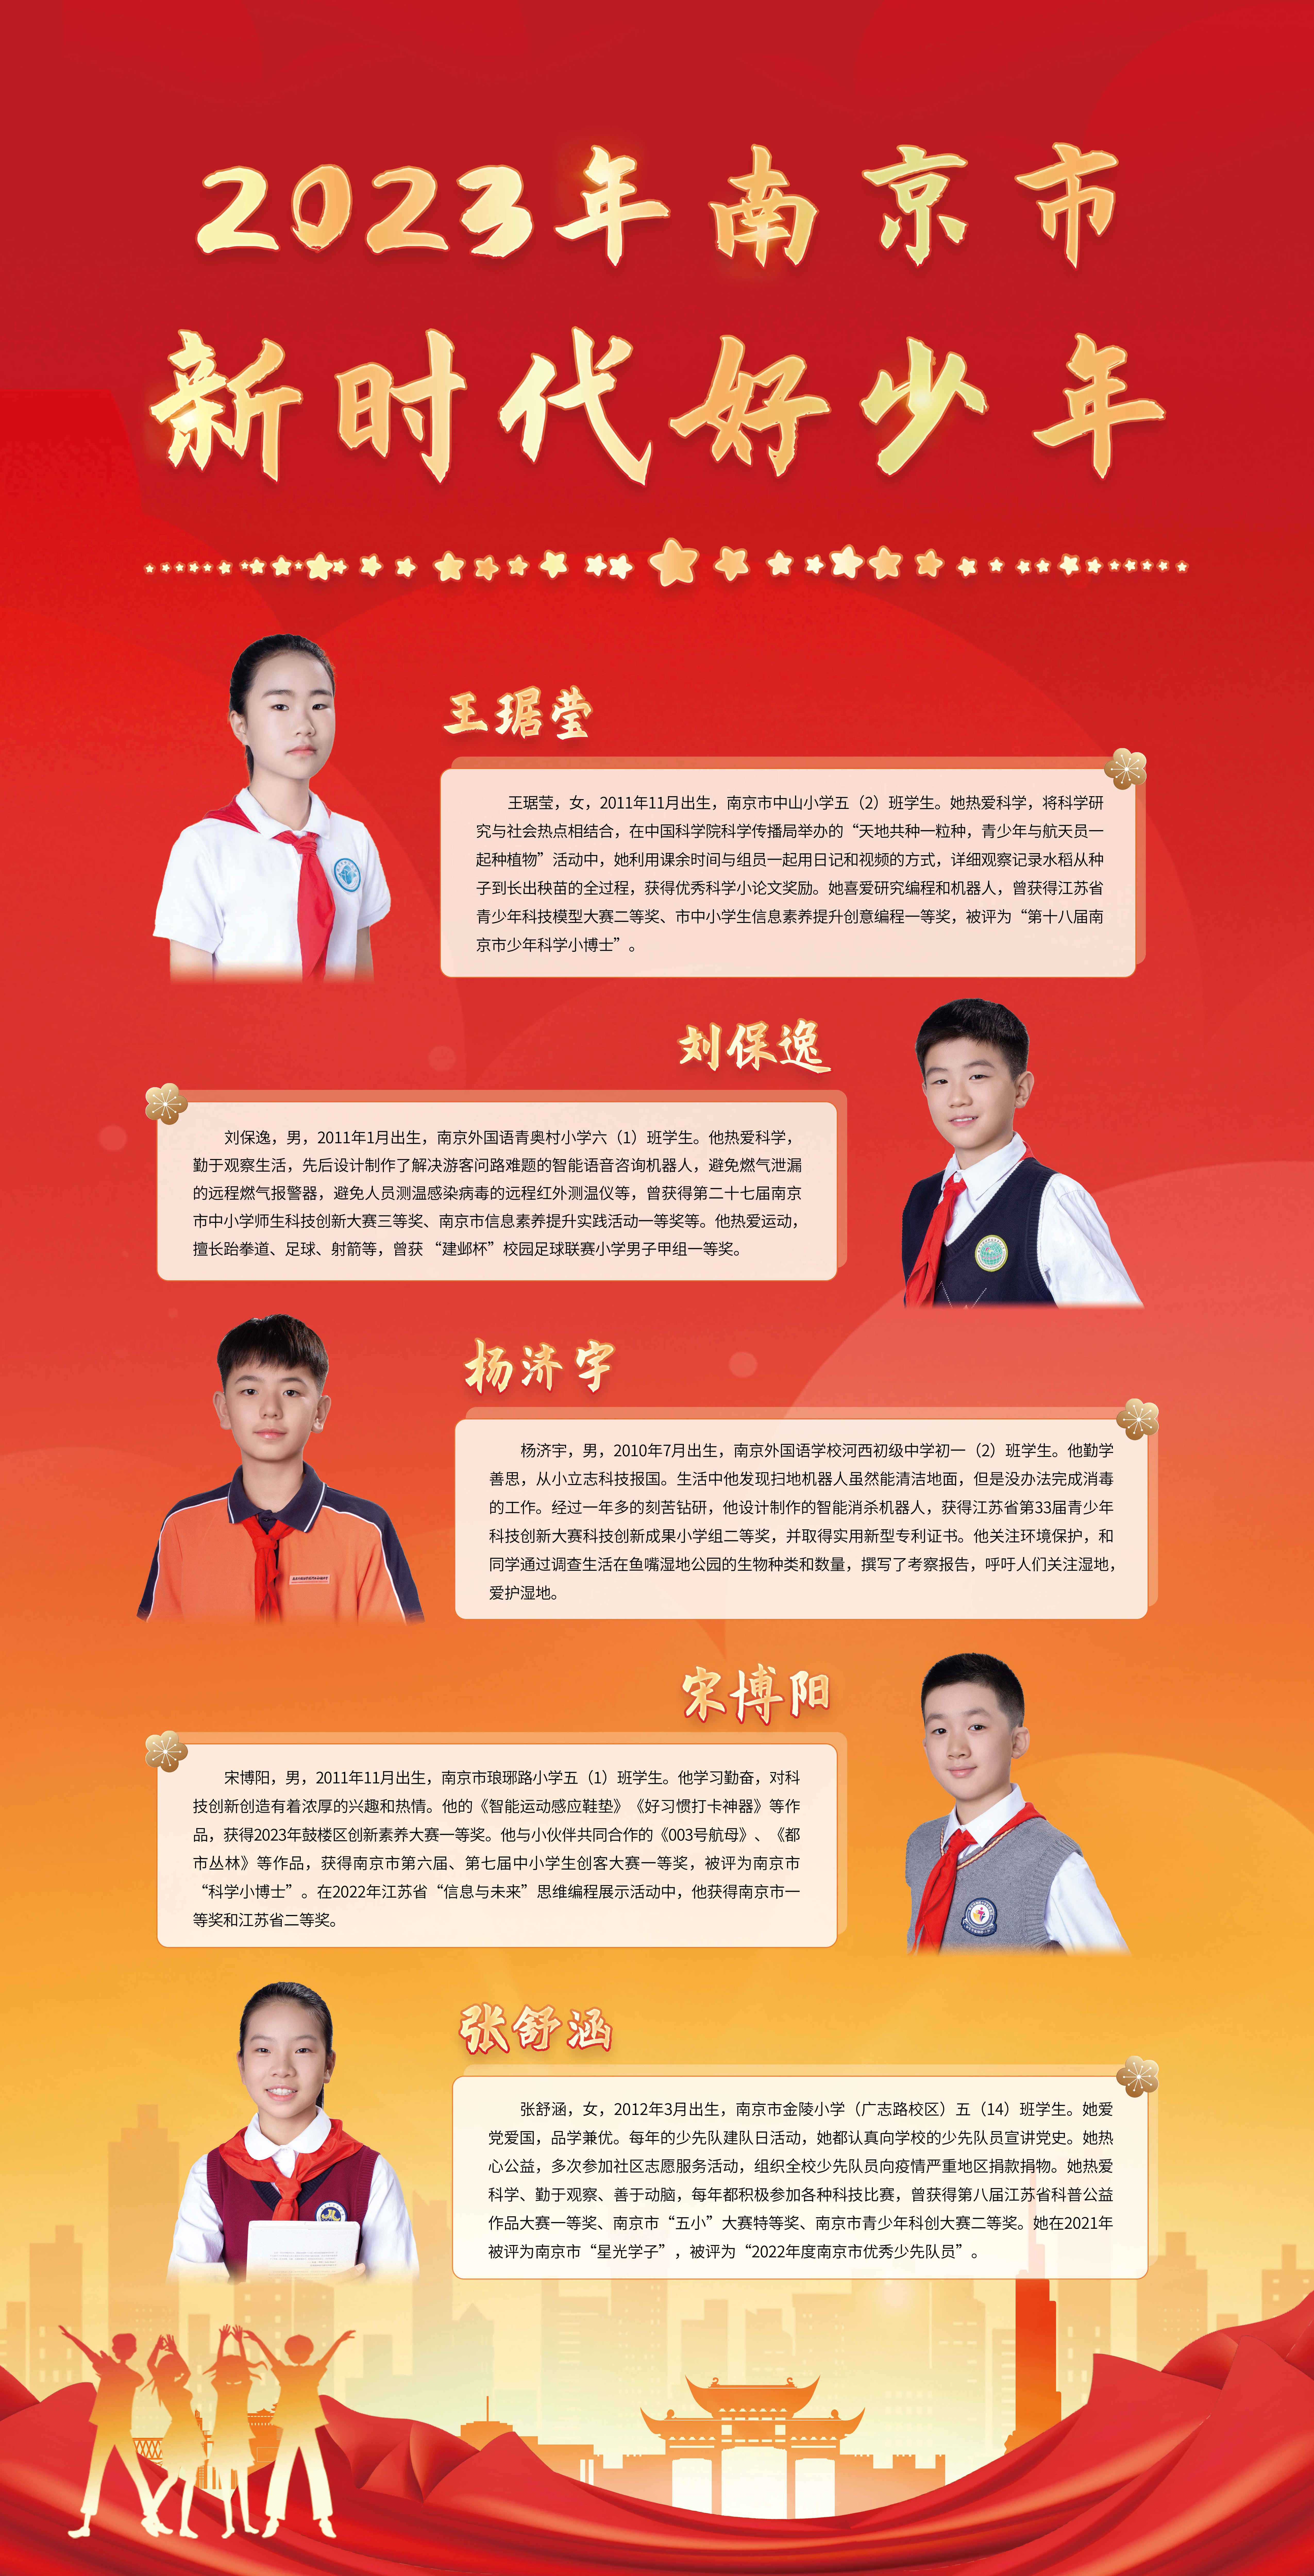 2023-年南京市第一批“新时代好少年”宣传展示图2.jpg